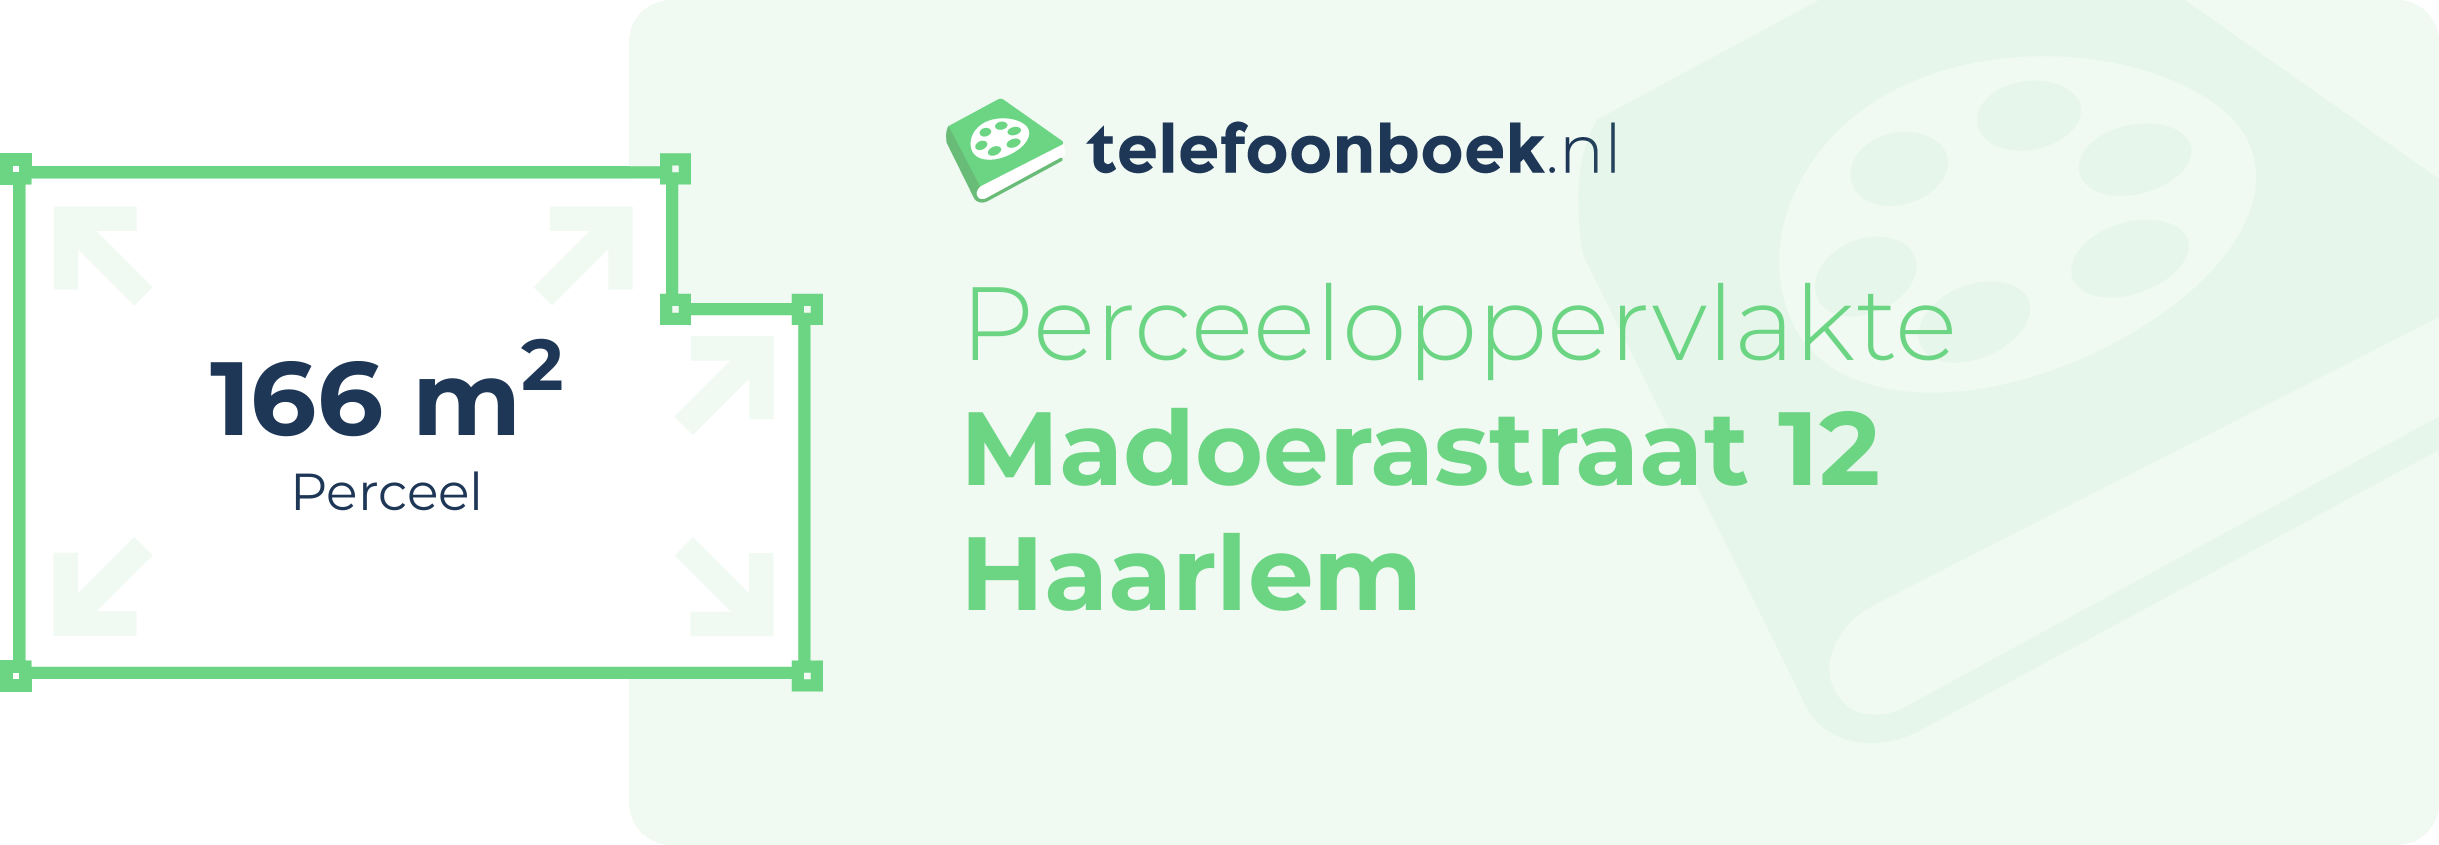 Perceeloppervlakte Madoerastraat 12 Haarlem